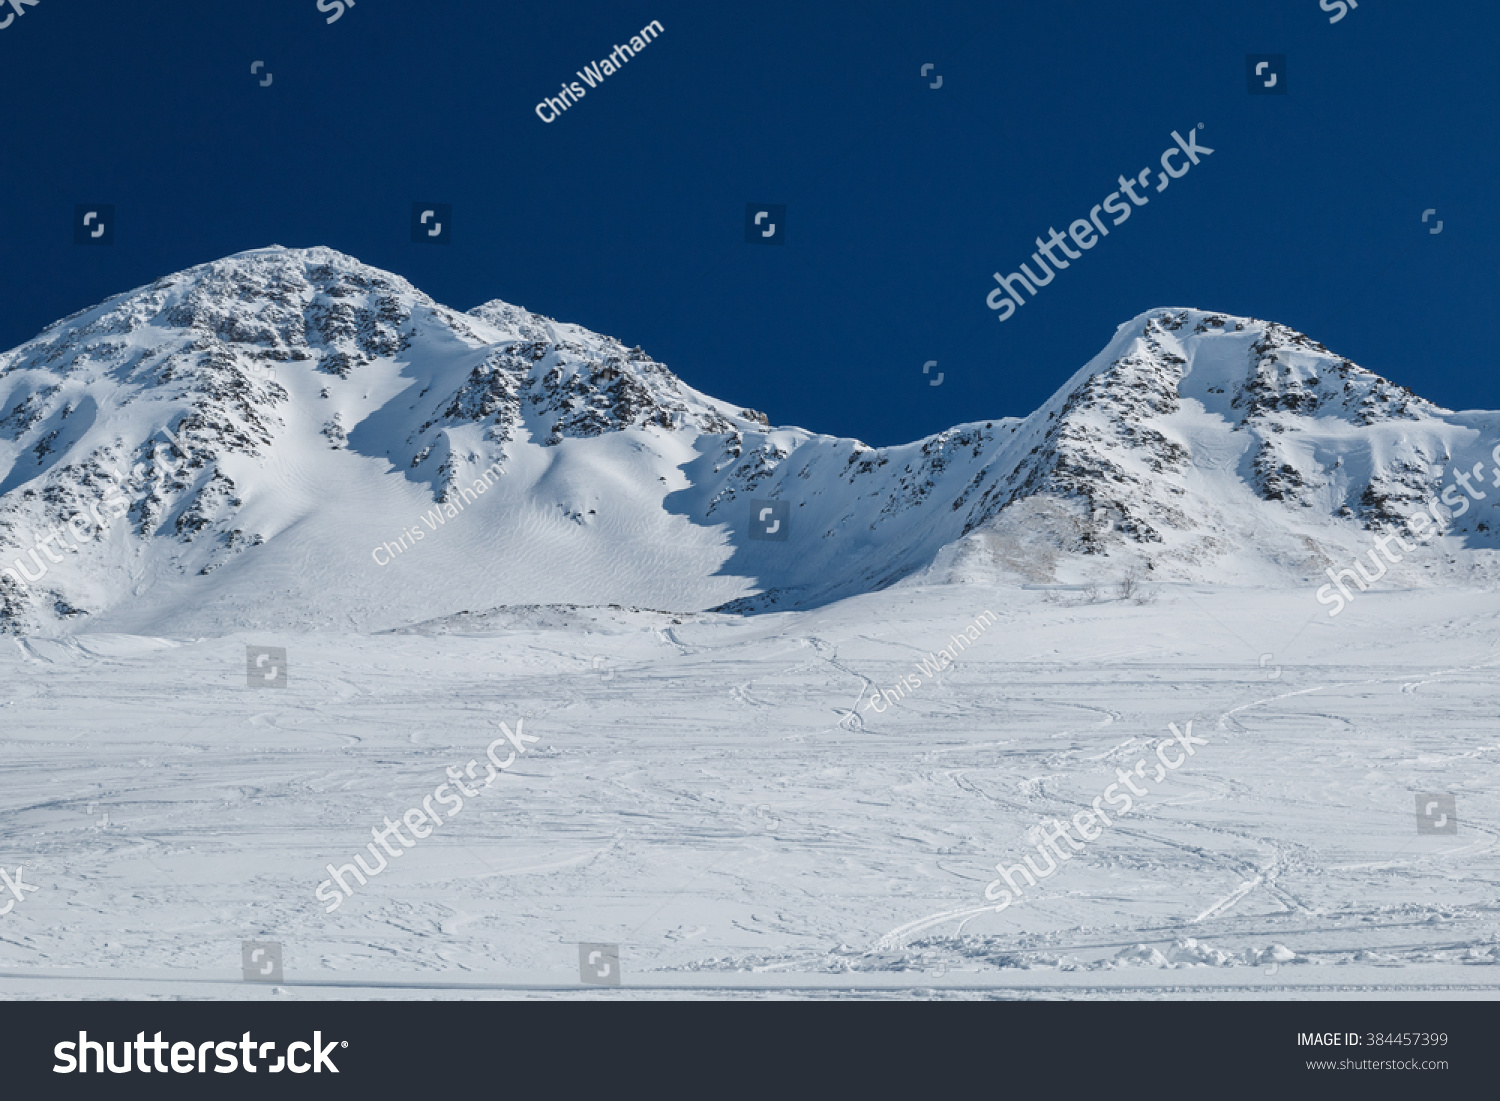 滑雪和滑雪板运动轨迹在雪斜率的山口。深蓝色